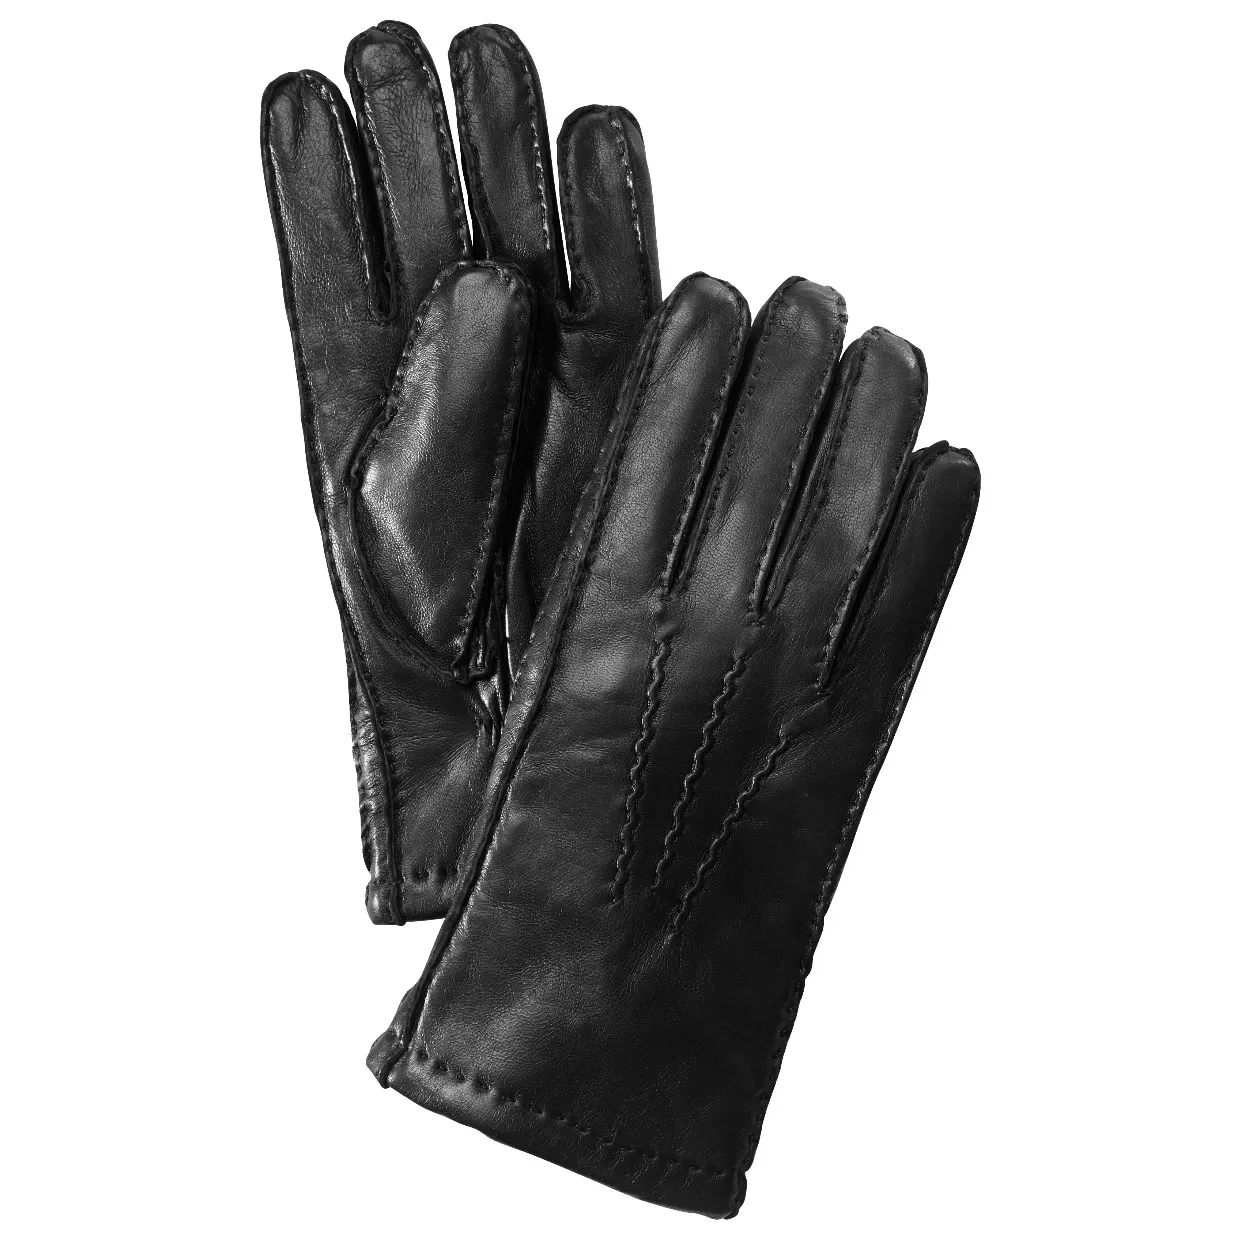 Gaucho handsker | Køb lækre handsker online | 1-3 levering